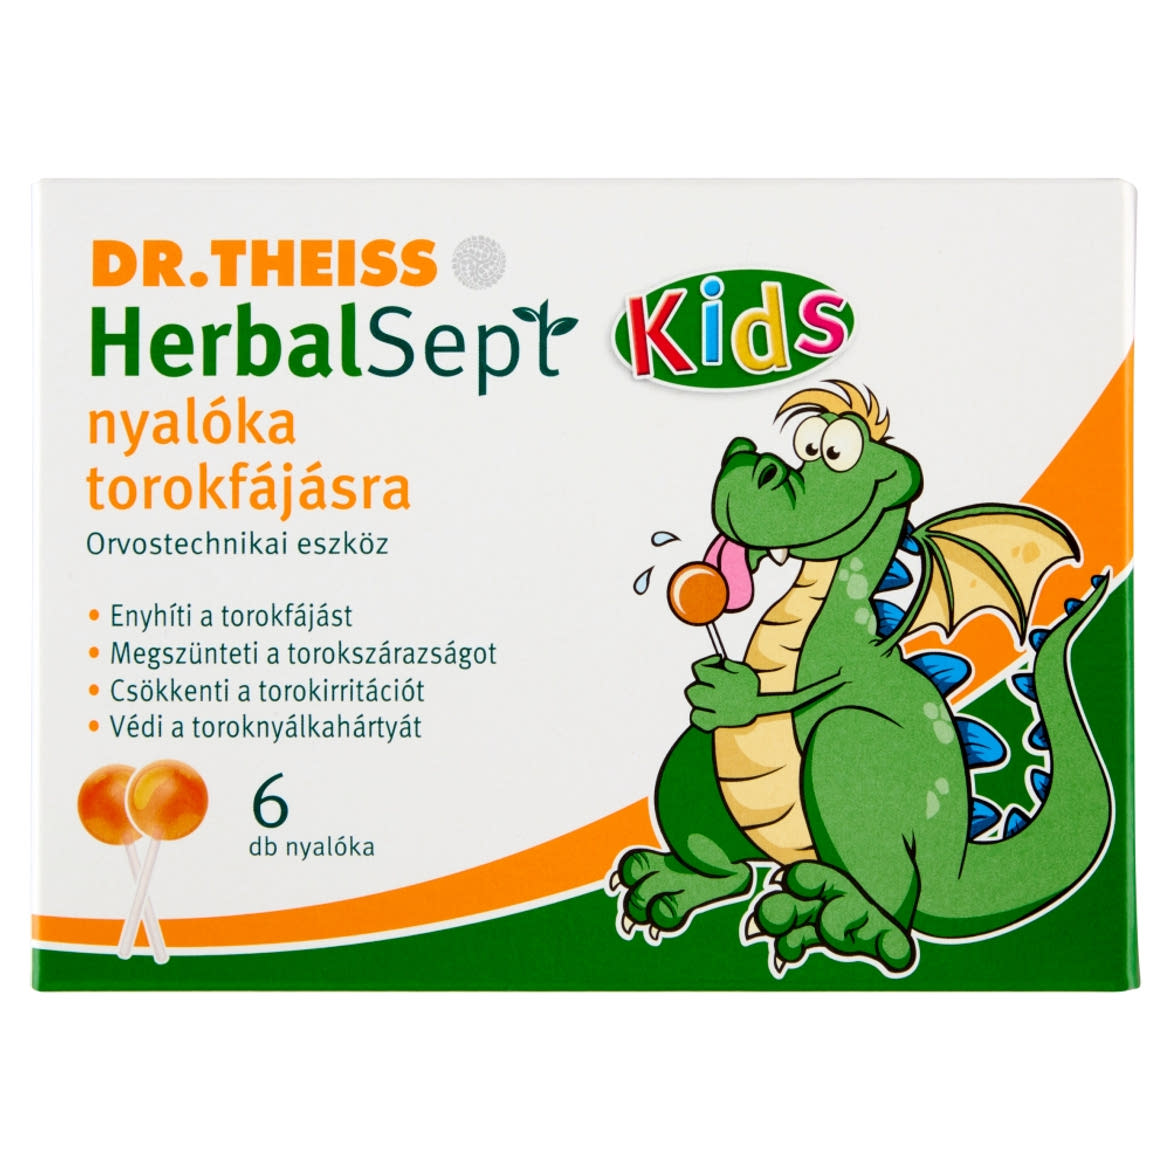 Dr.Theiss HerbalSept Kids nyalÃ³ka torokfÃ¡jÃ¡sra